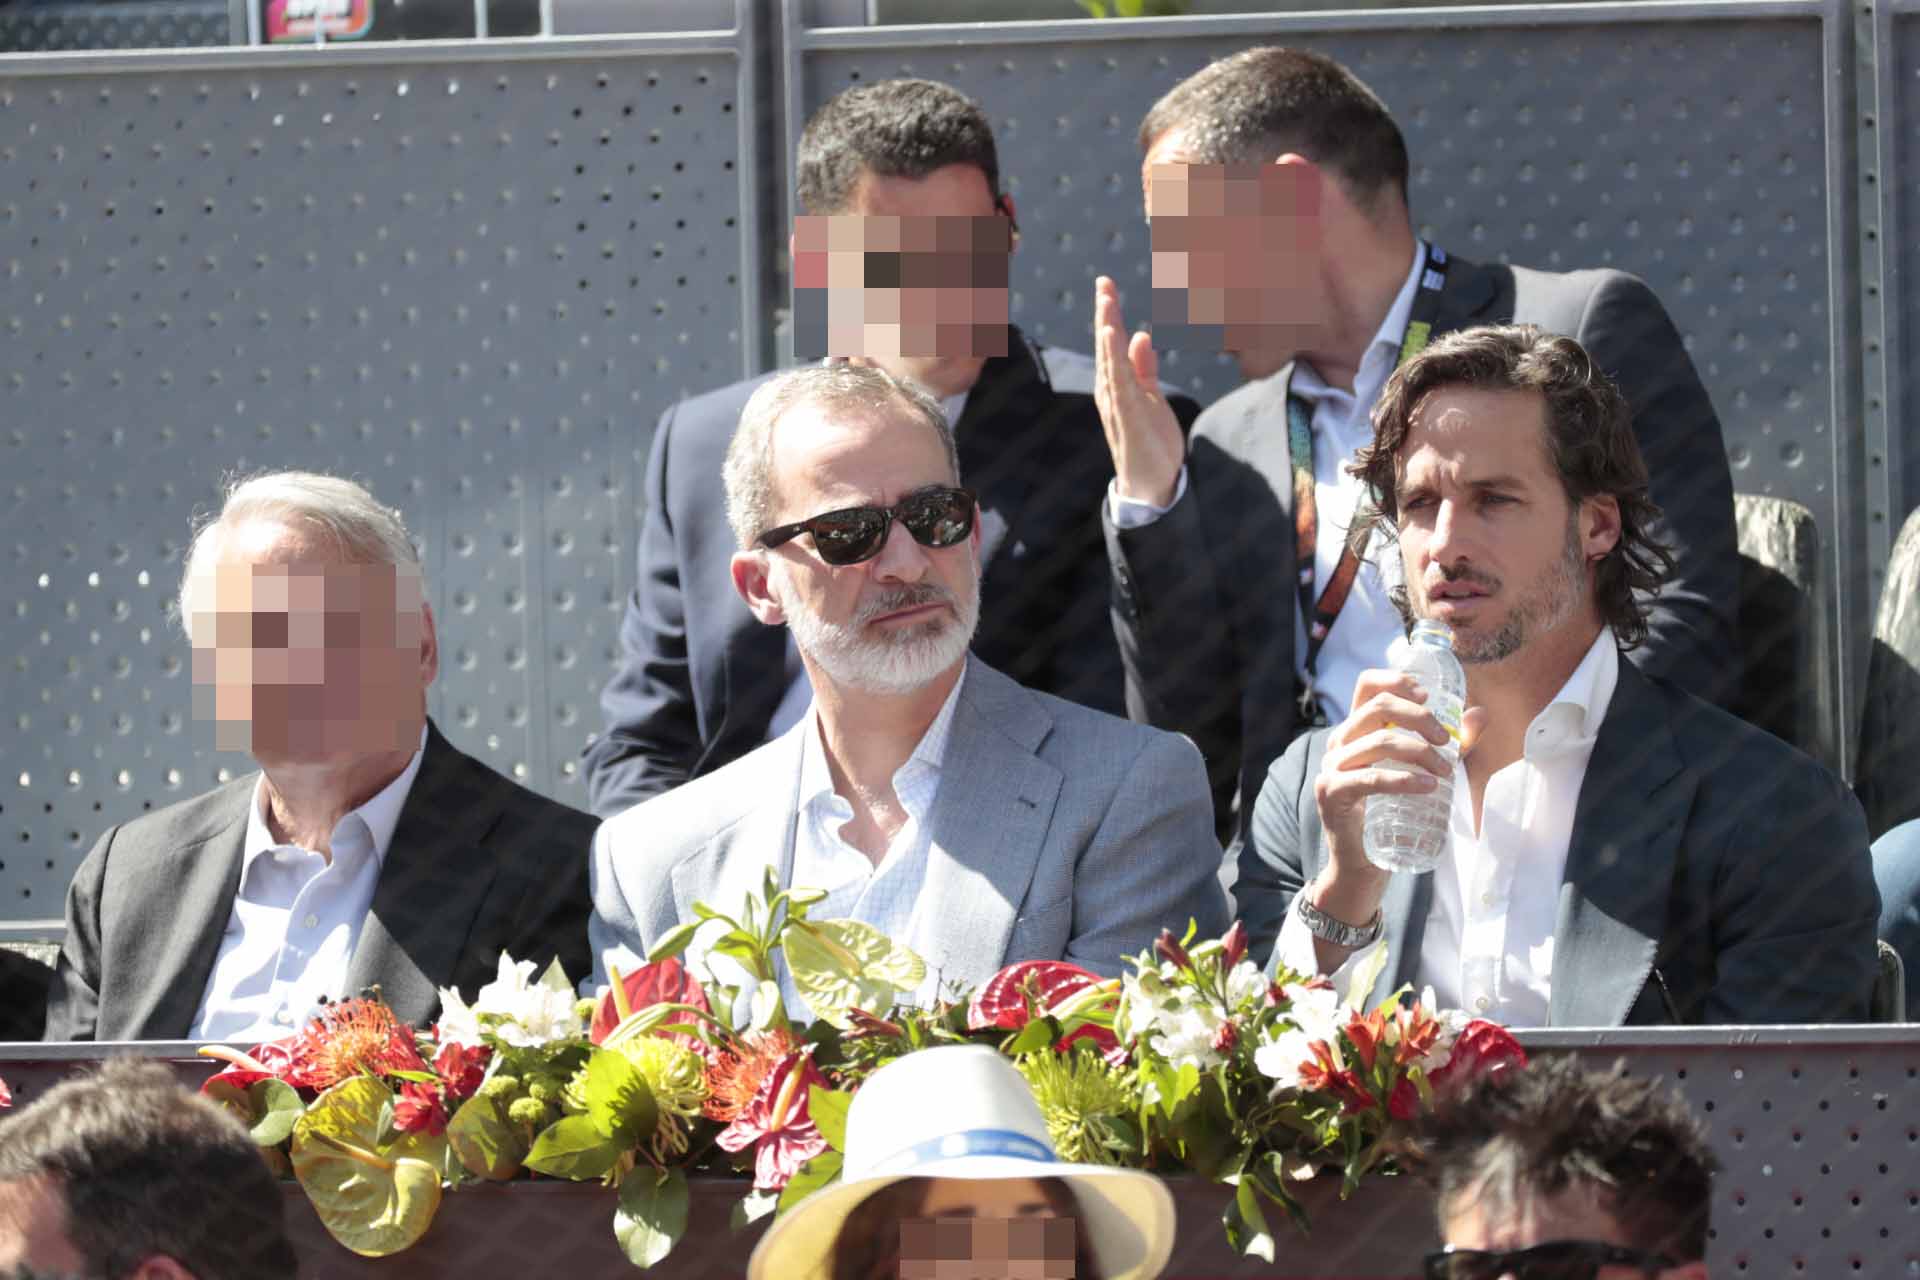 El rey Felipe VI aparece por sorpresa en el partido de Rafa Nadal y Carlos Alcaraz